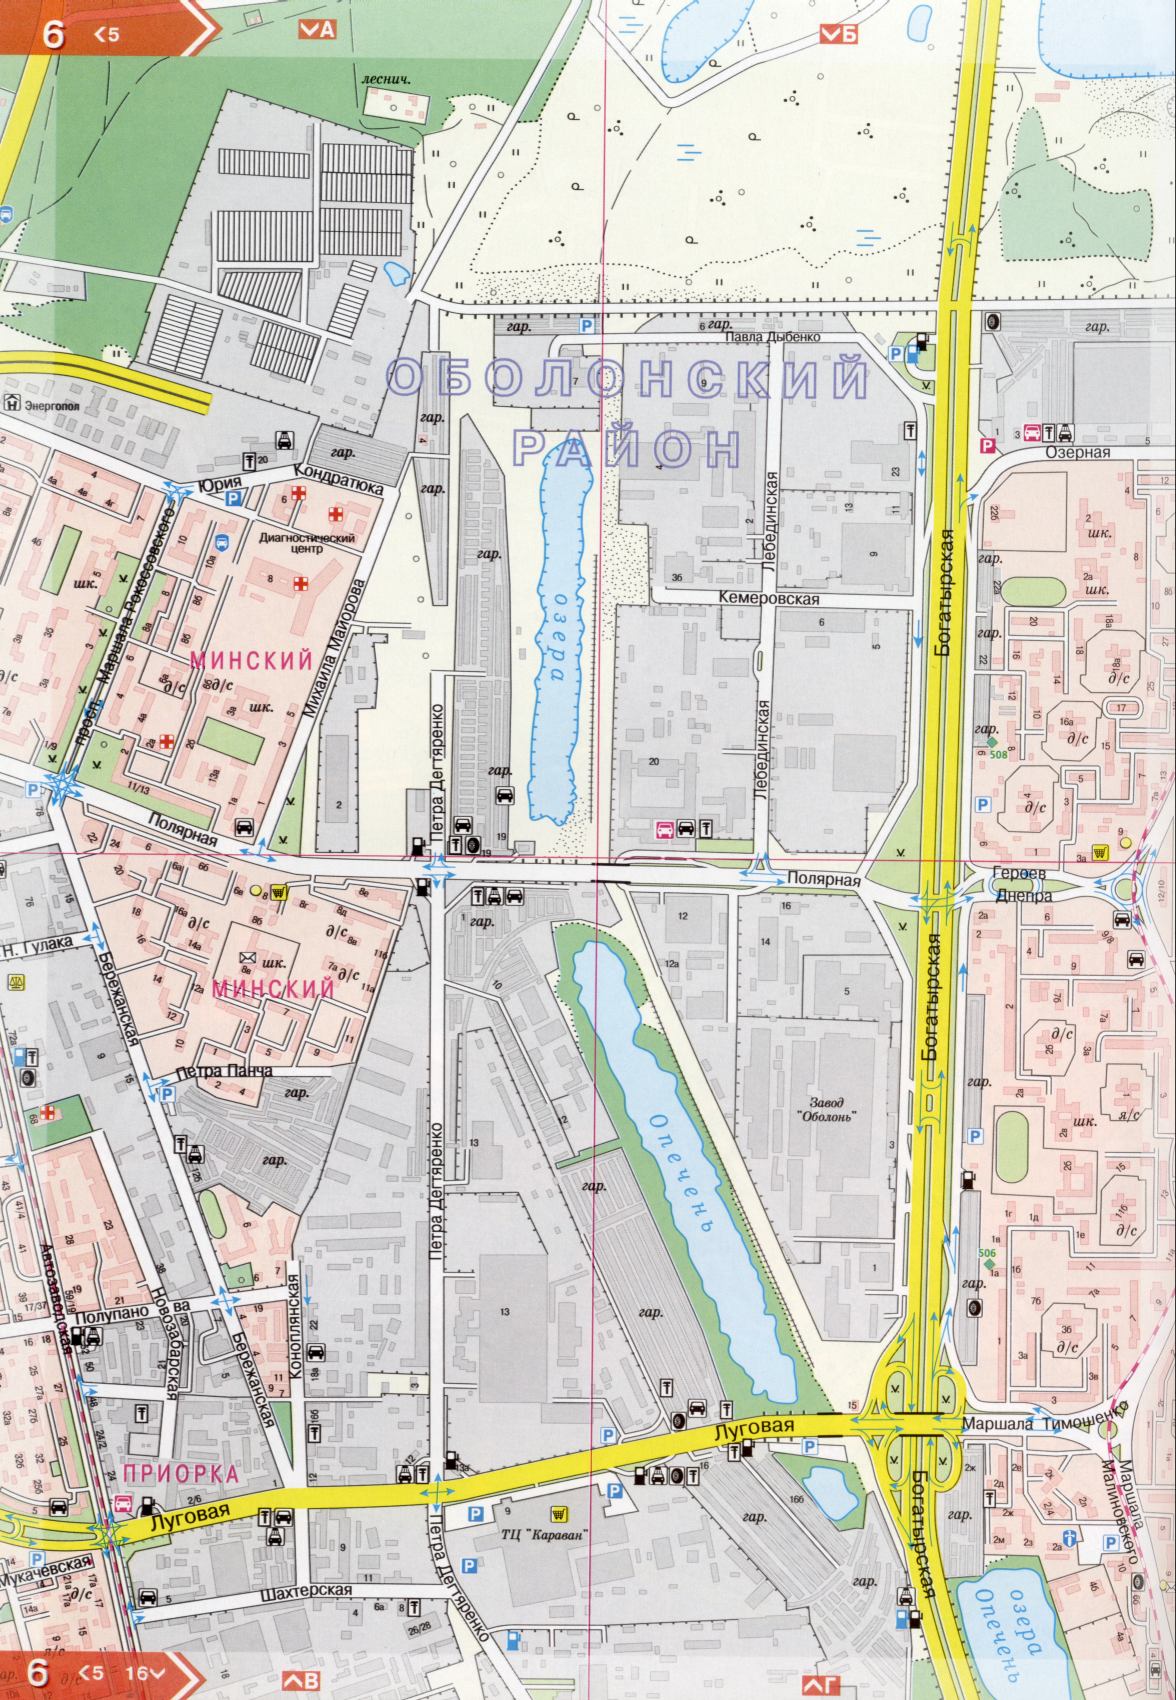 Kiev carte détails 1cm = 150m pour 45 feuilles. Carte de Kiev de l'atlas des routes. Télécharger une carte détaillée, D0 - Guerriers rue Kiev